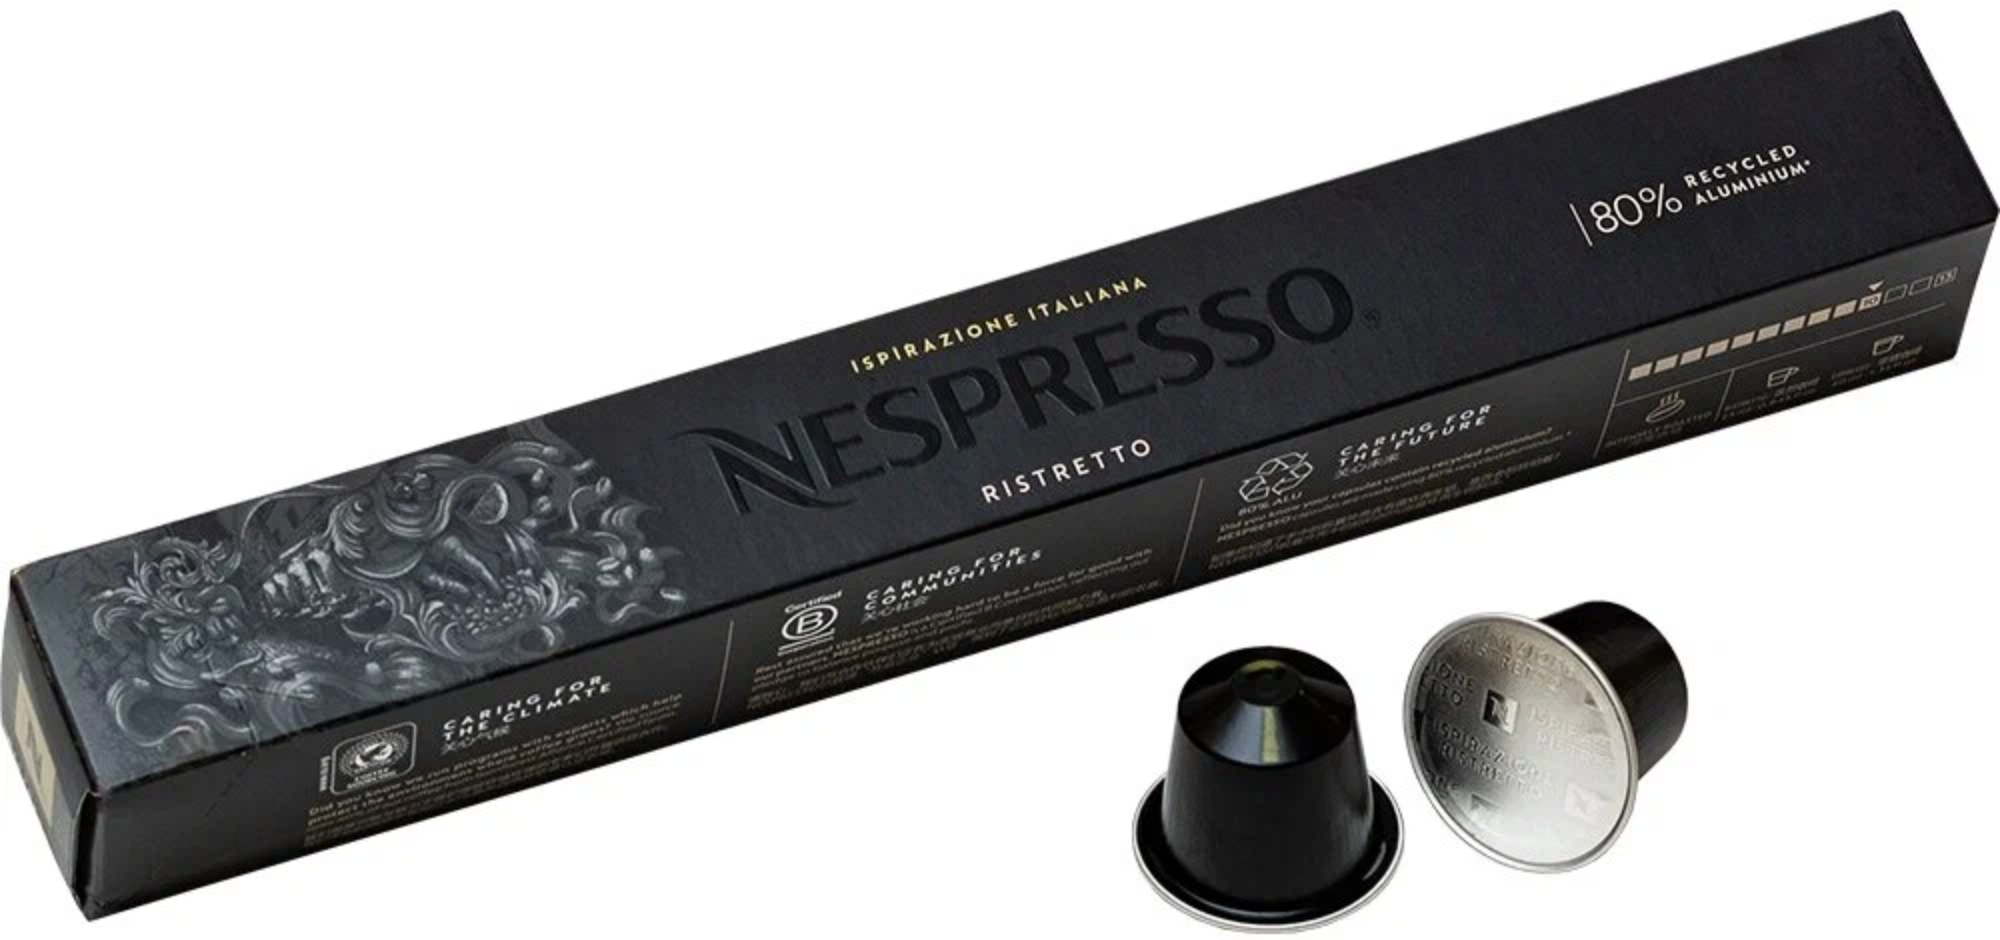 Капсулы для кофемашины Nespresso Ispirazione Ristretto Italiano, 10 кап. в уп, 10 уп.